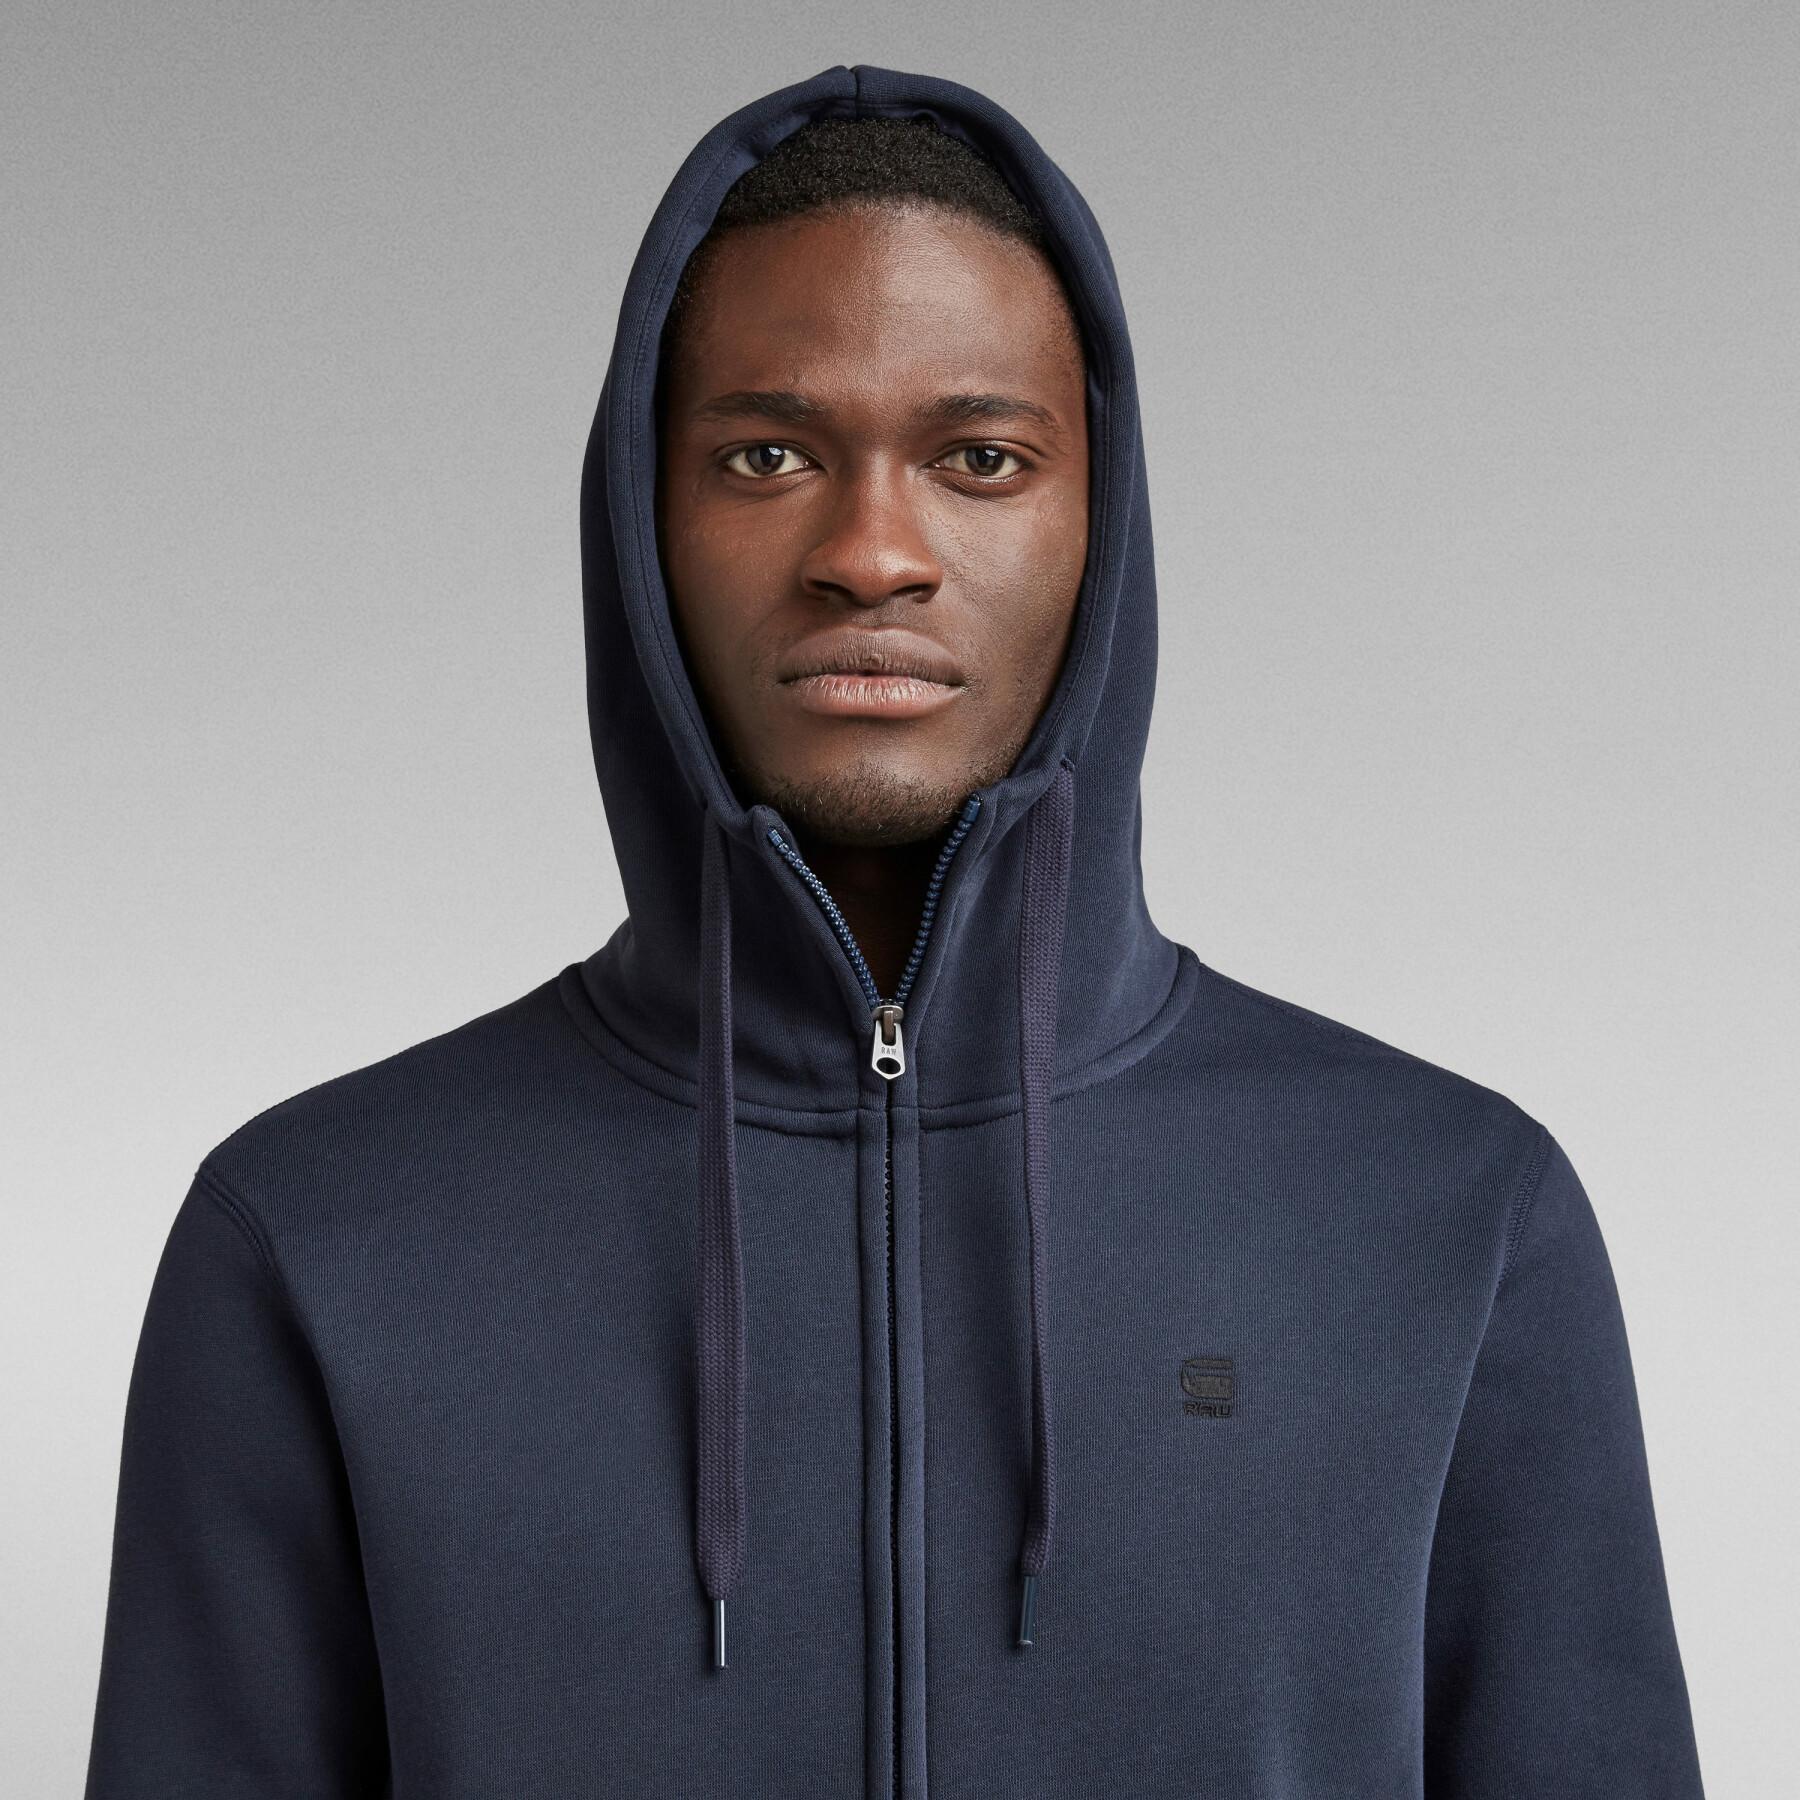 Hooded sweatshirt G-Star Premium Basic Zip